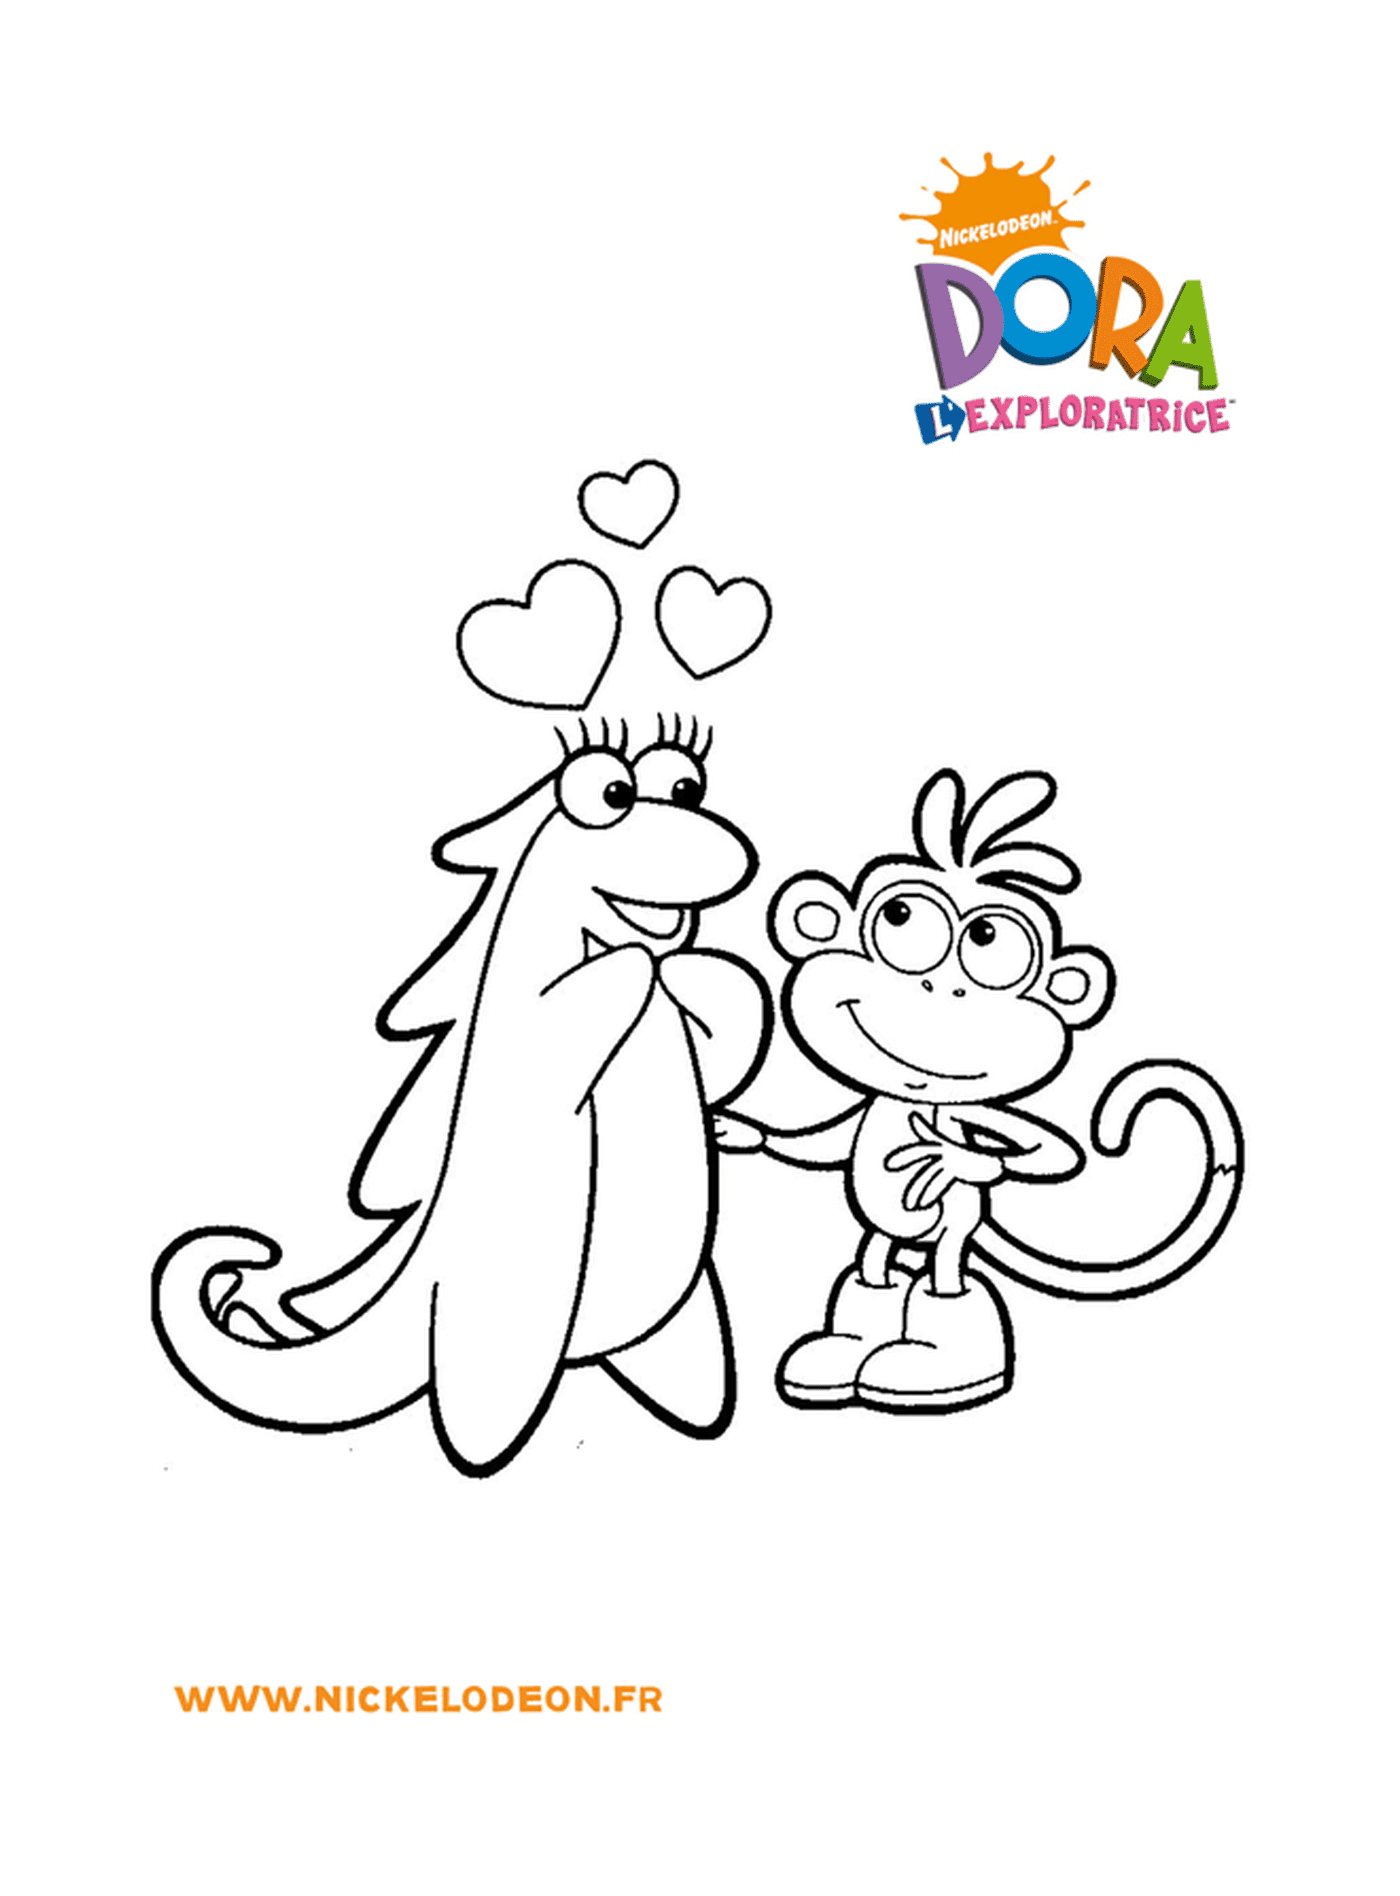  Dora und Babouche entdecken Liebe im Herzen ihrer Abenteuer 